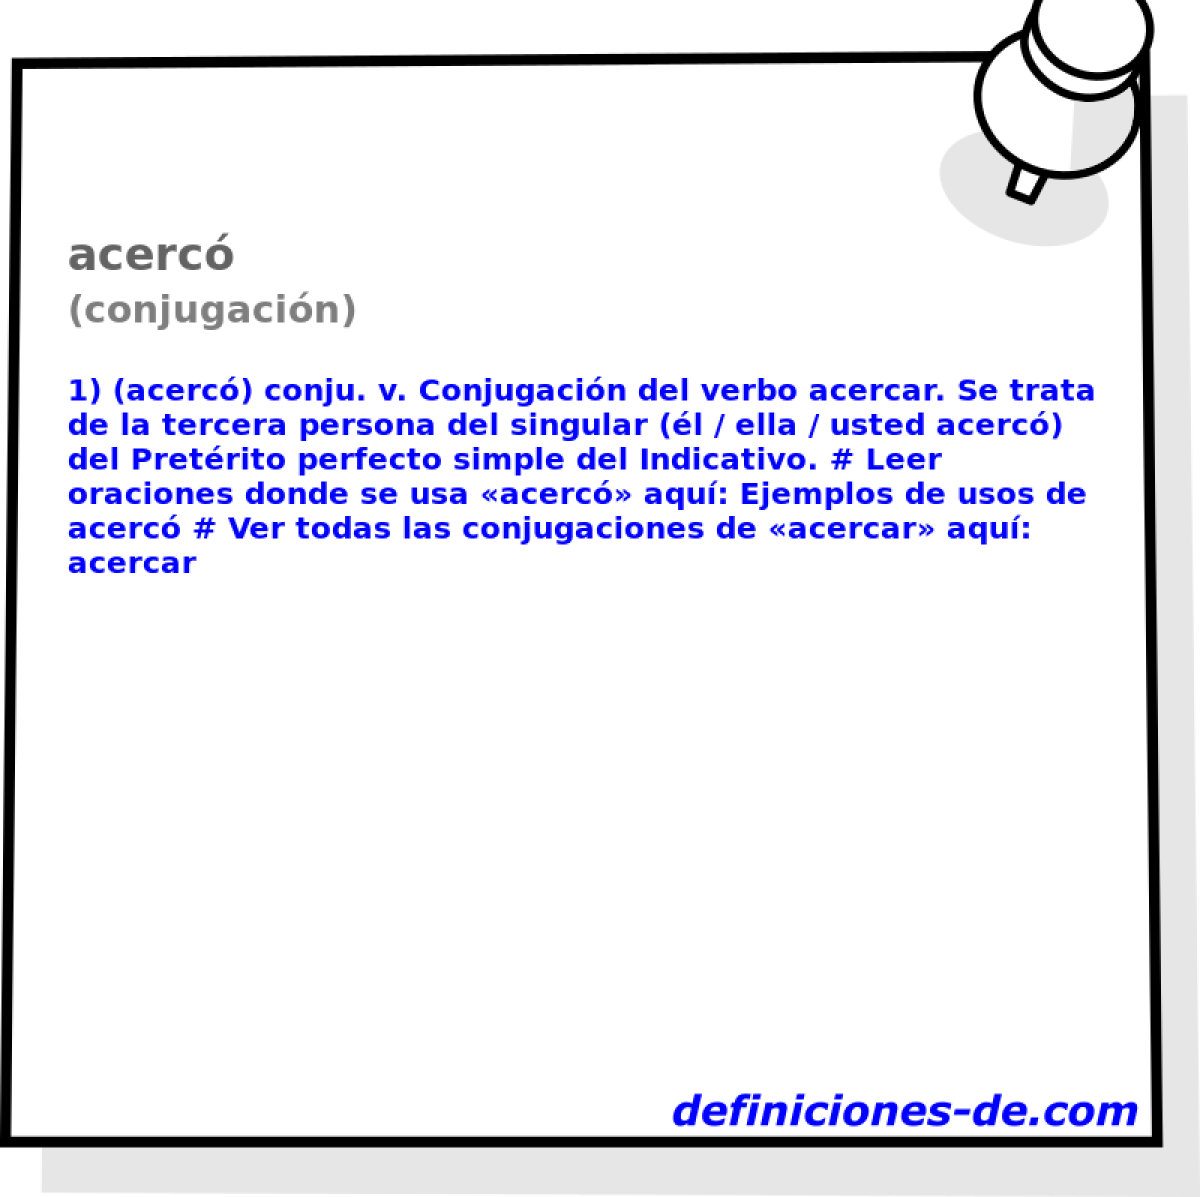 acerc (conjugacin)